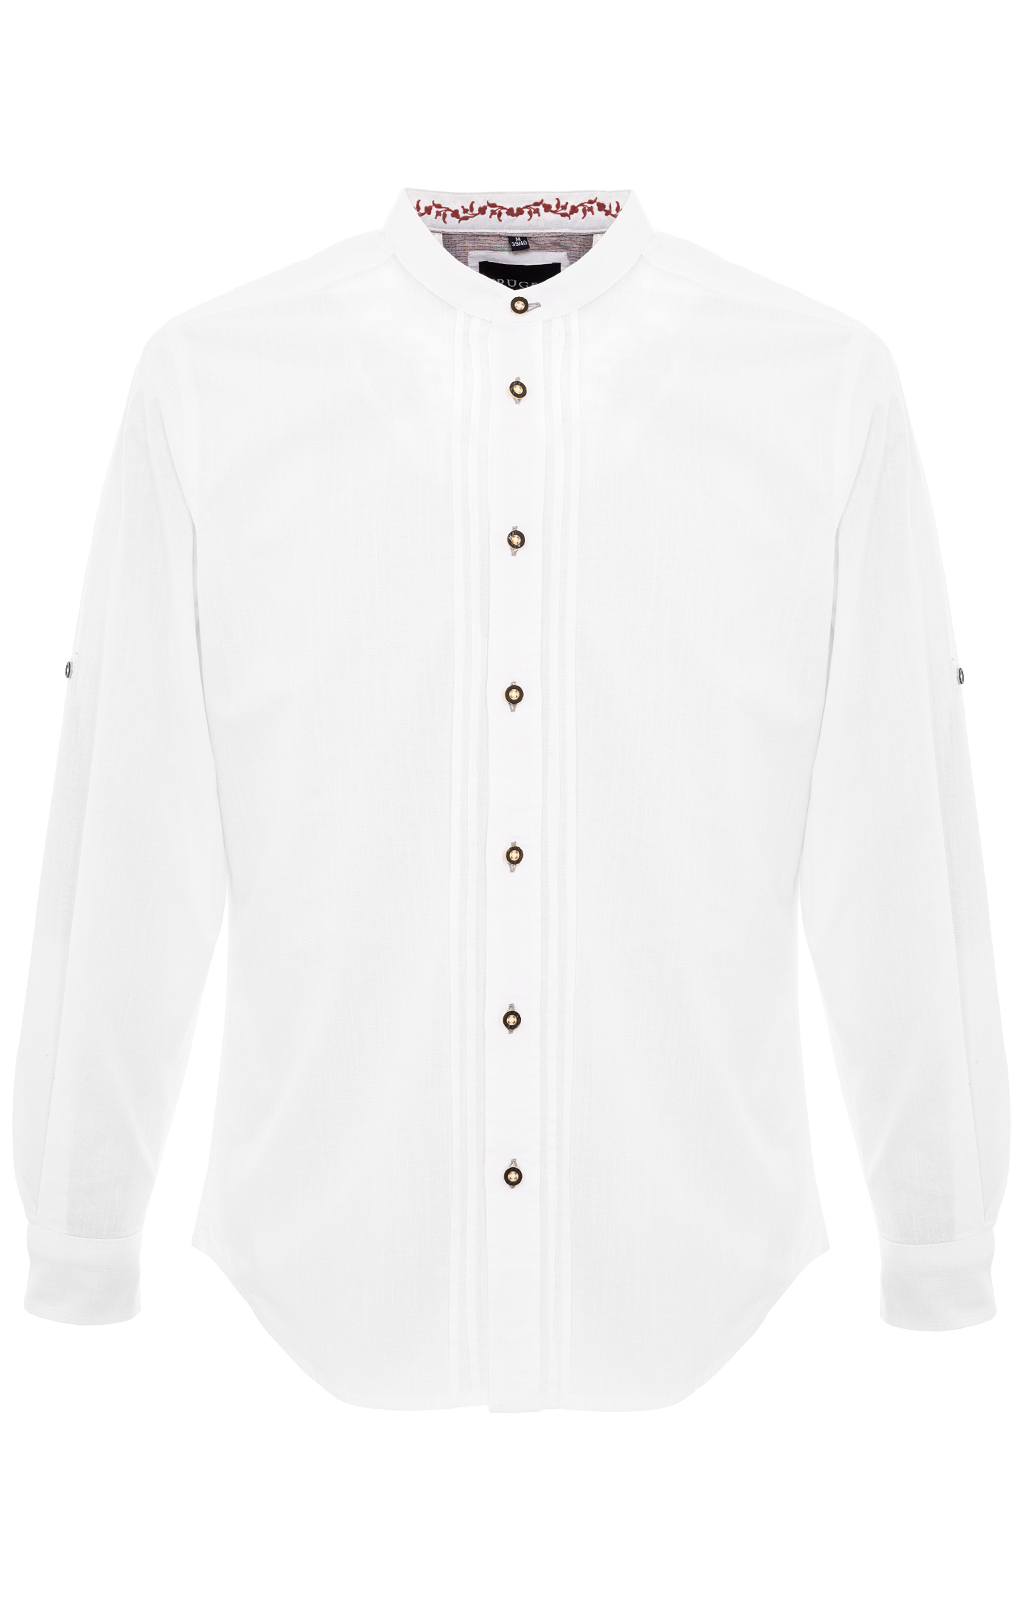 weitere Bilder von German traditional shirt JONAS white bordeaux